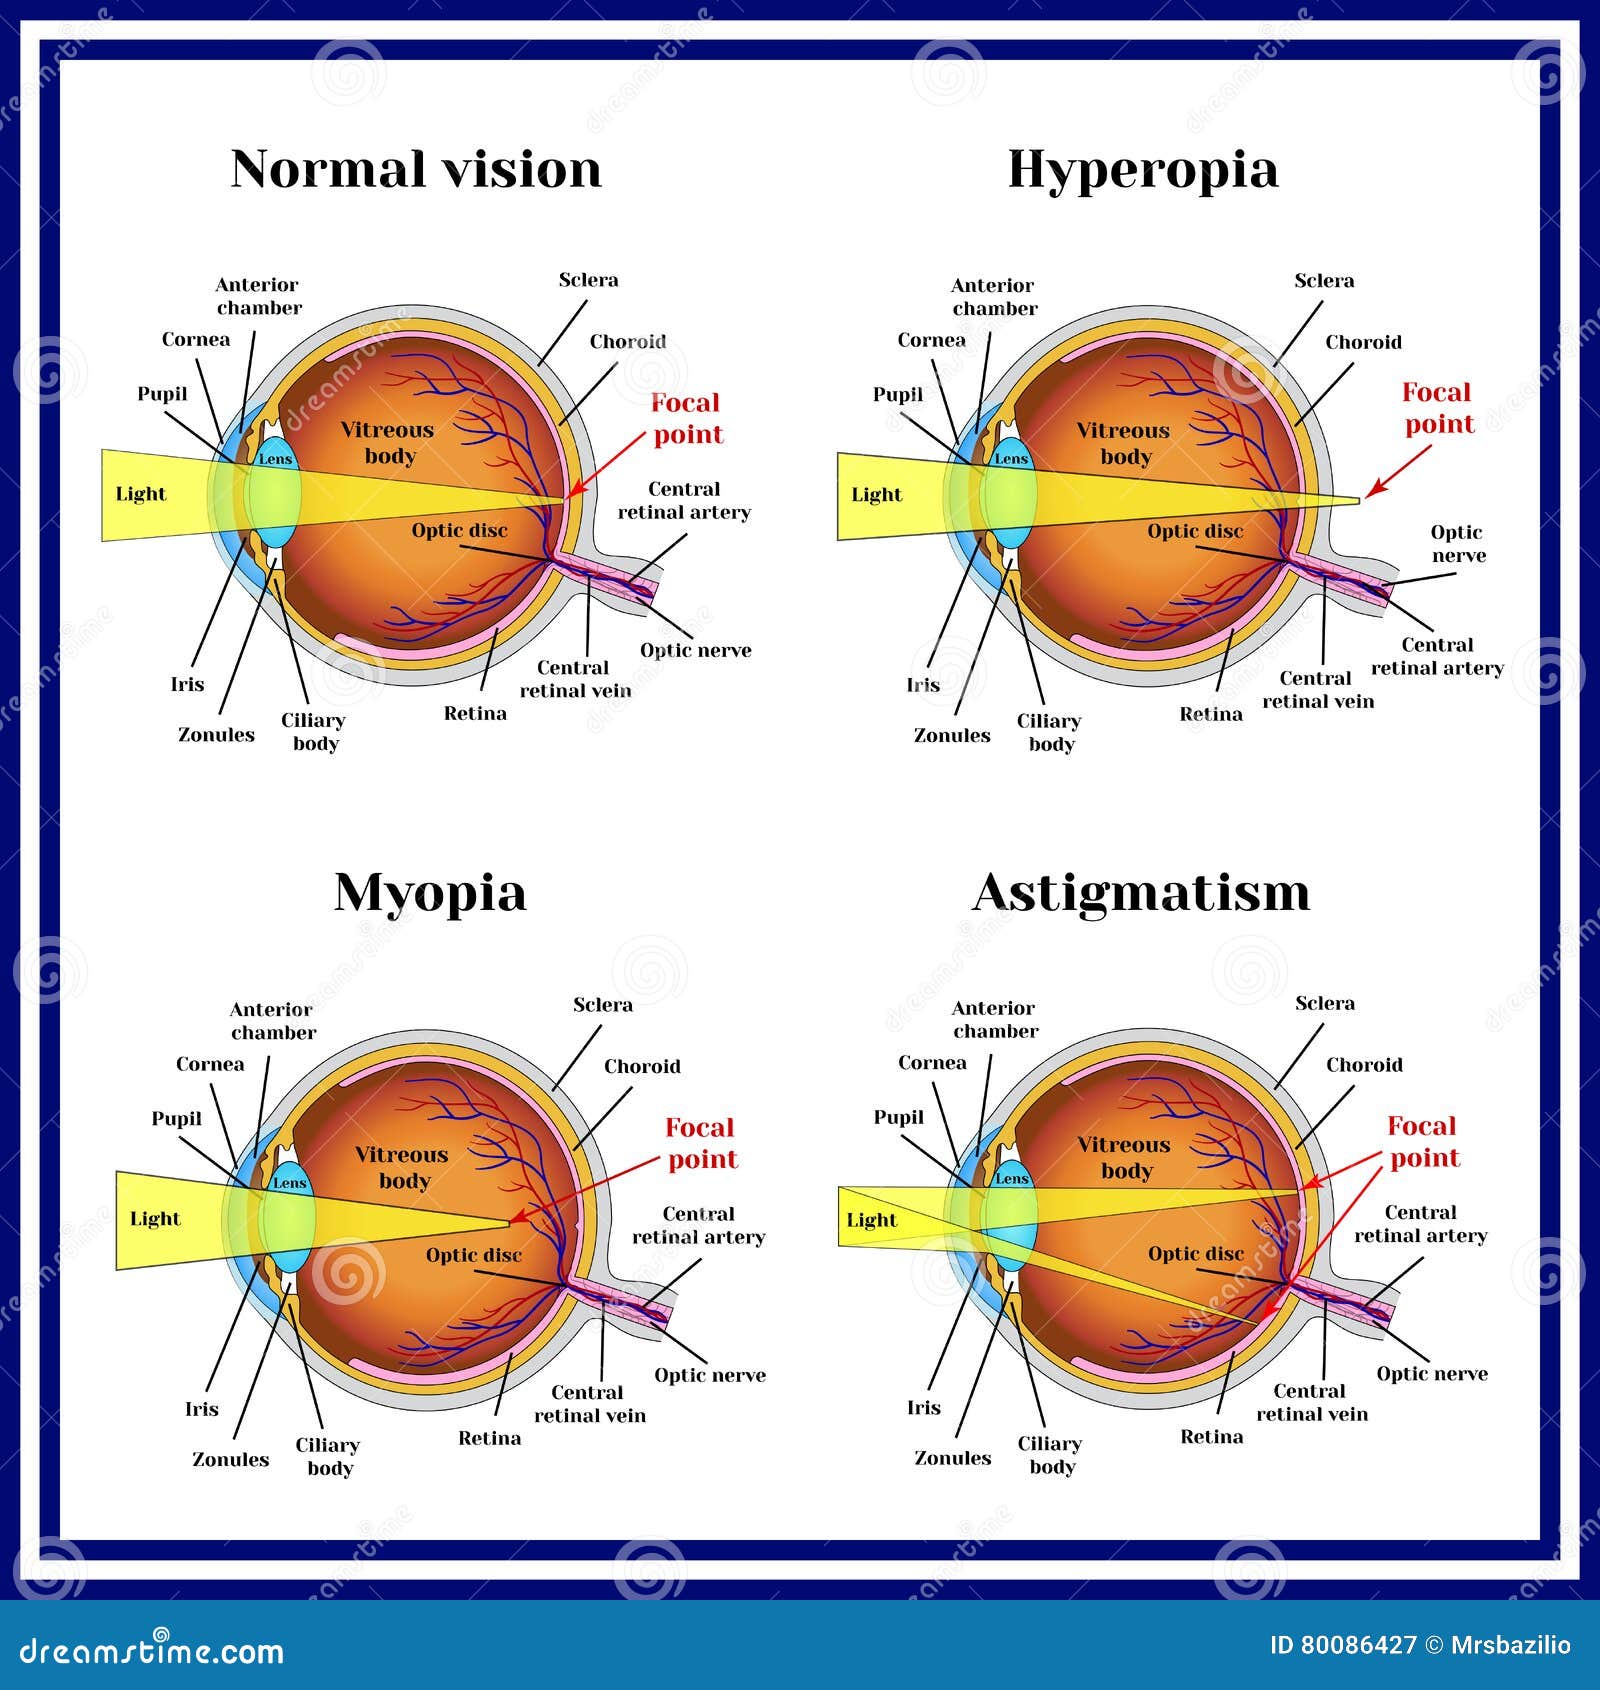 Astigmia: a szem egyik fénytörési hibája